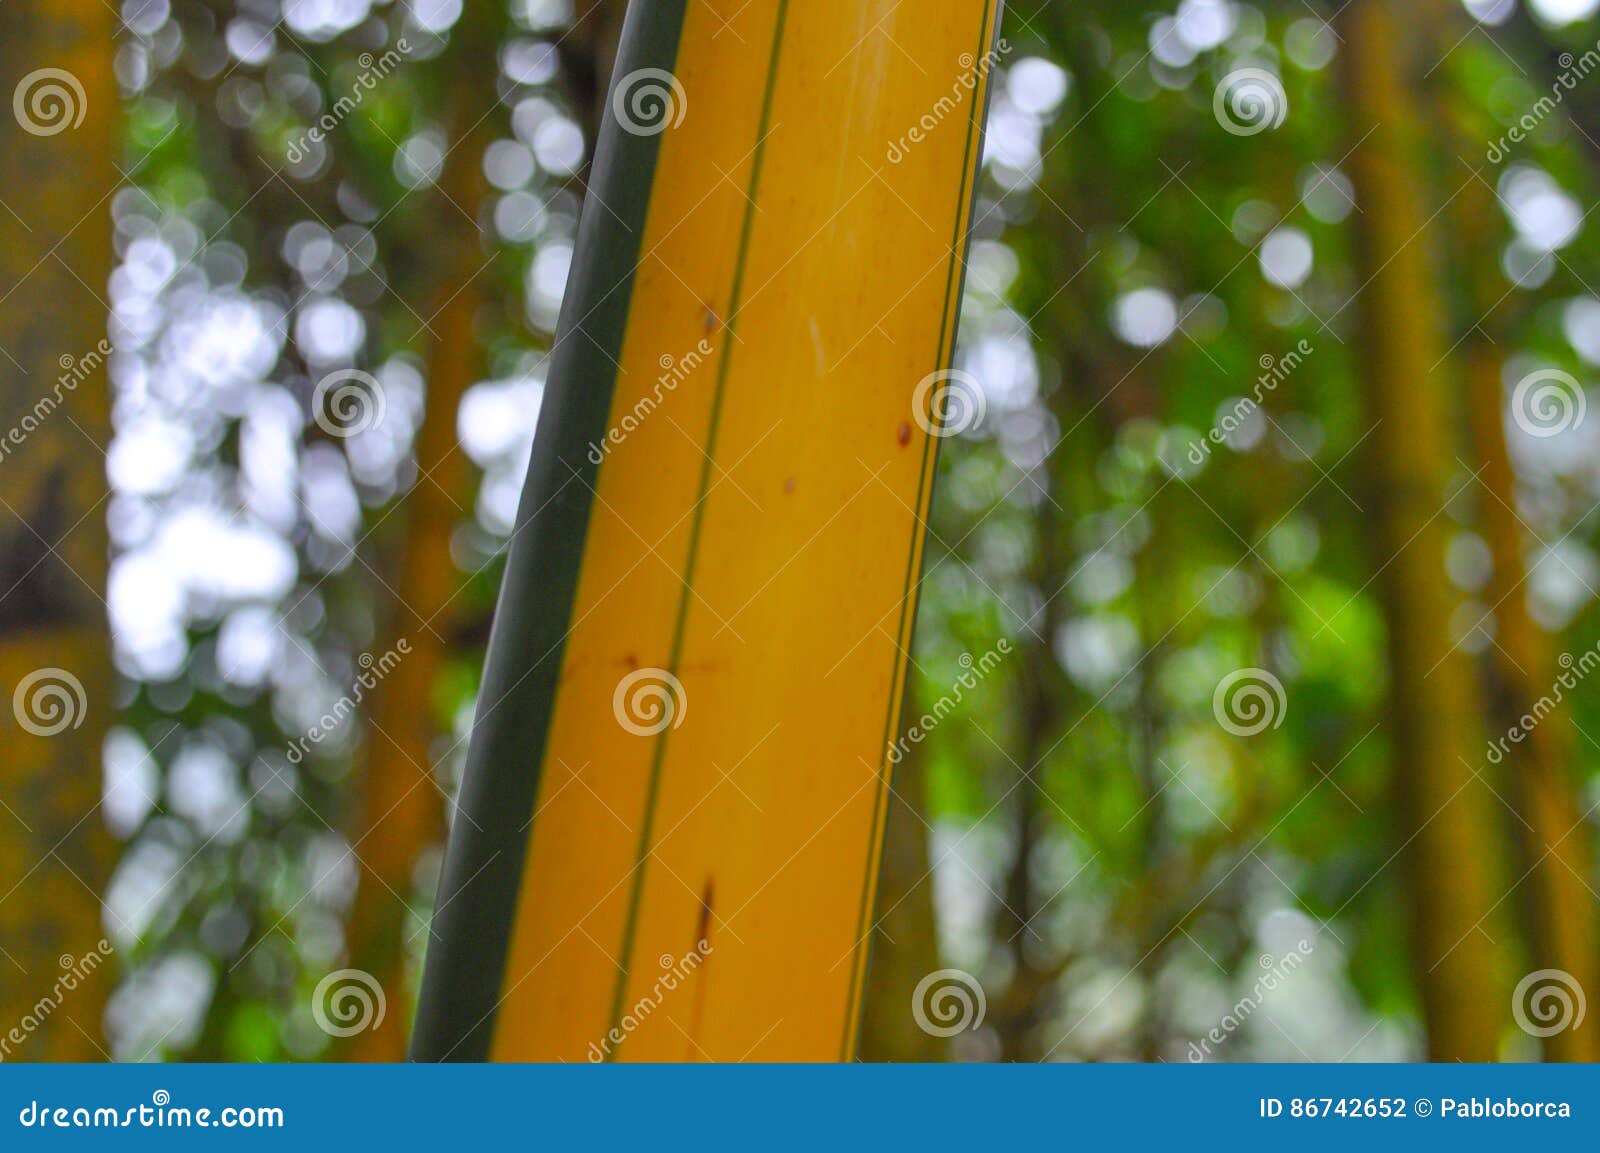 Vista di un dettaglio di bambù verde e marrone